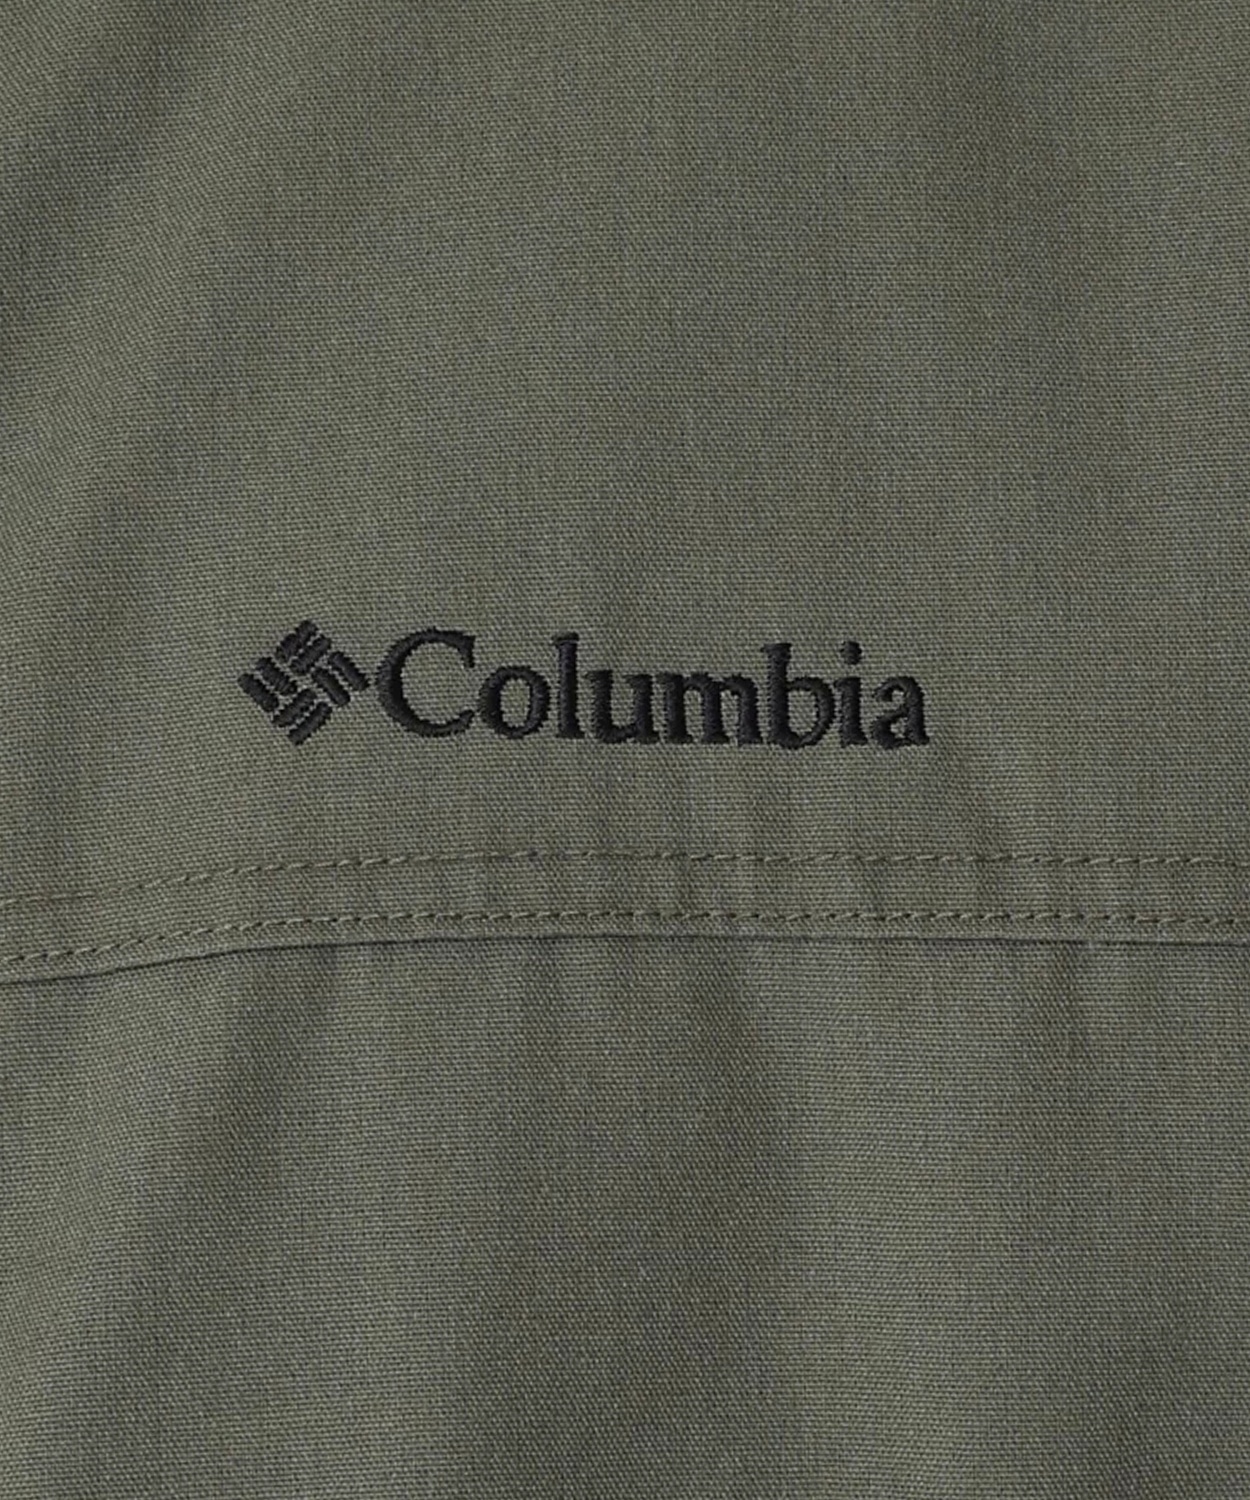 ロマビスタスタンドネックジャケット(XS Peatmoss)│コロンビア(Columbia)公式通販サイト